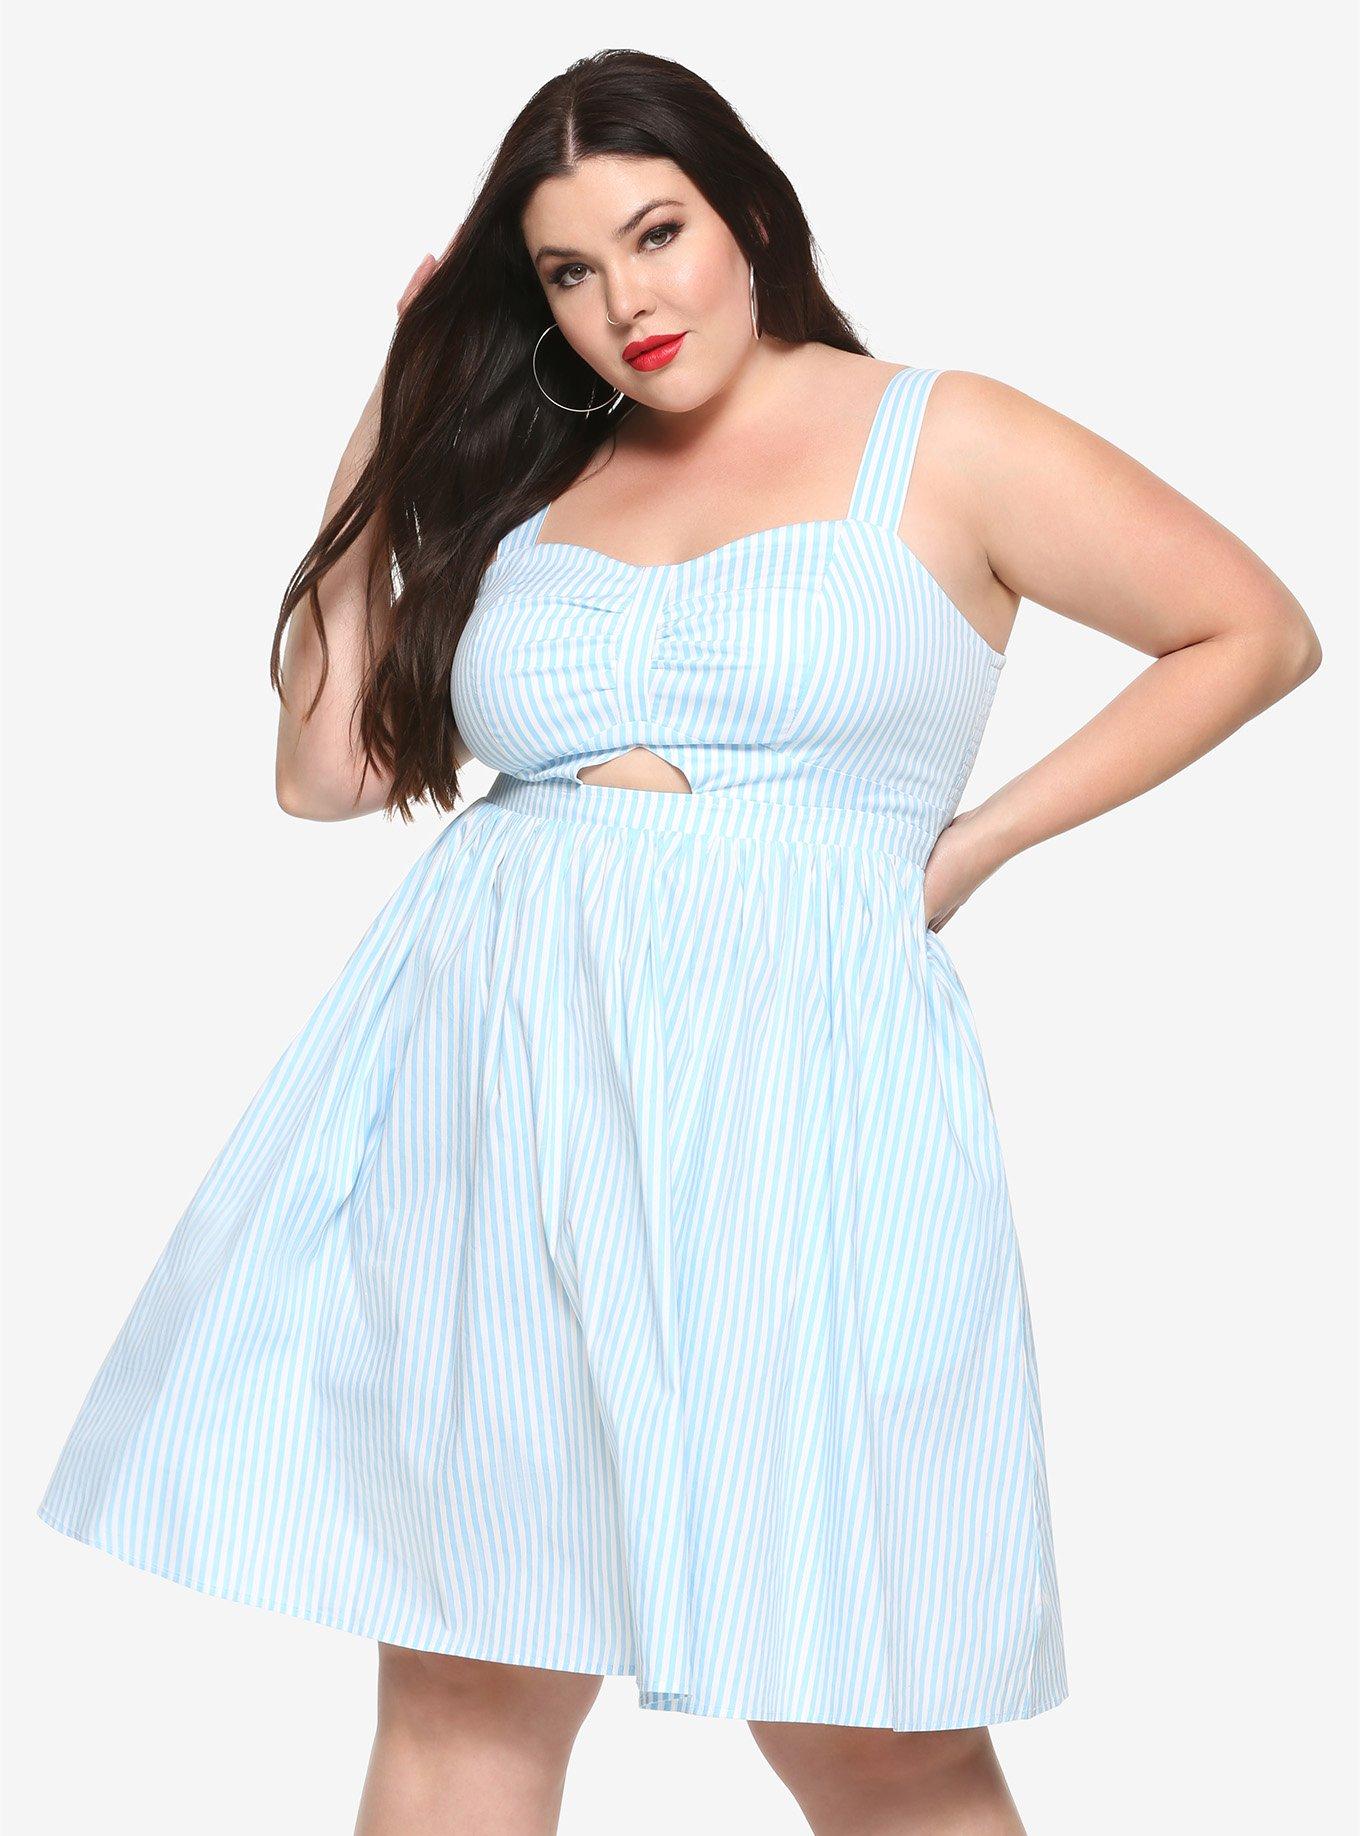 Blue & White Striped Cutout Fit & Flare Dress Plus Size, BLUE, hi-res